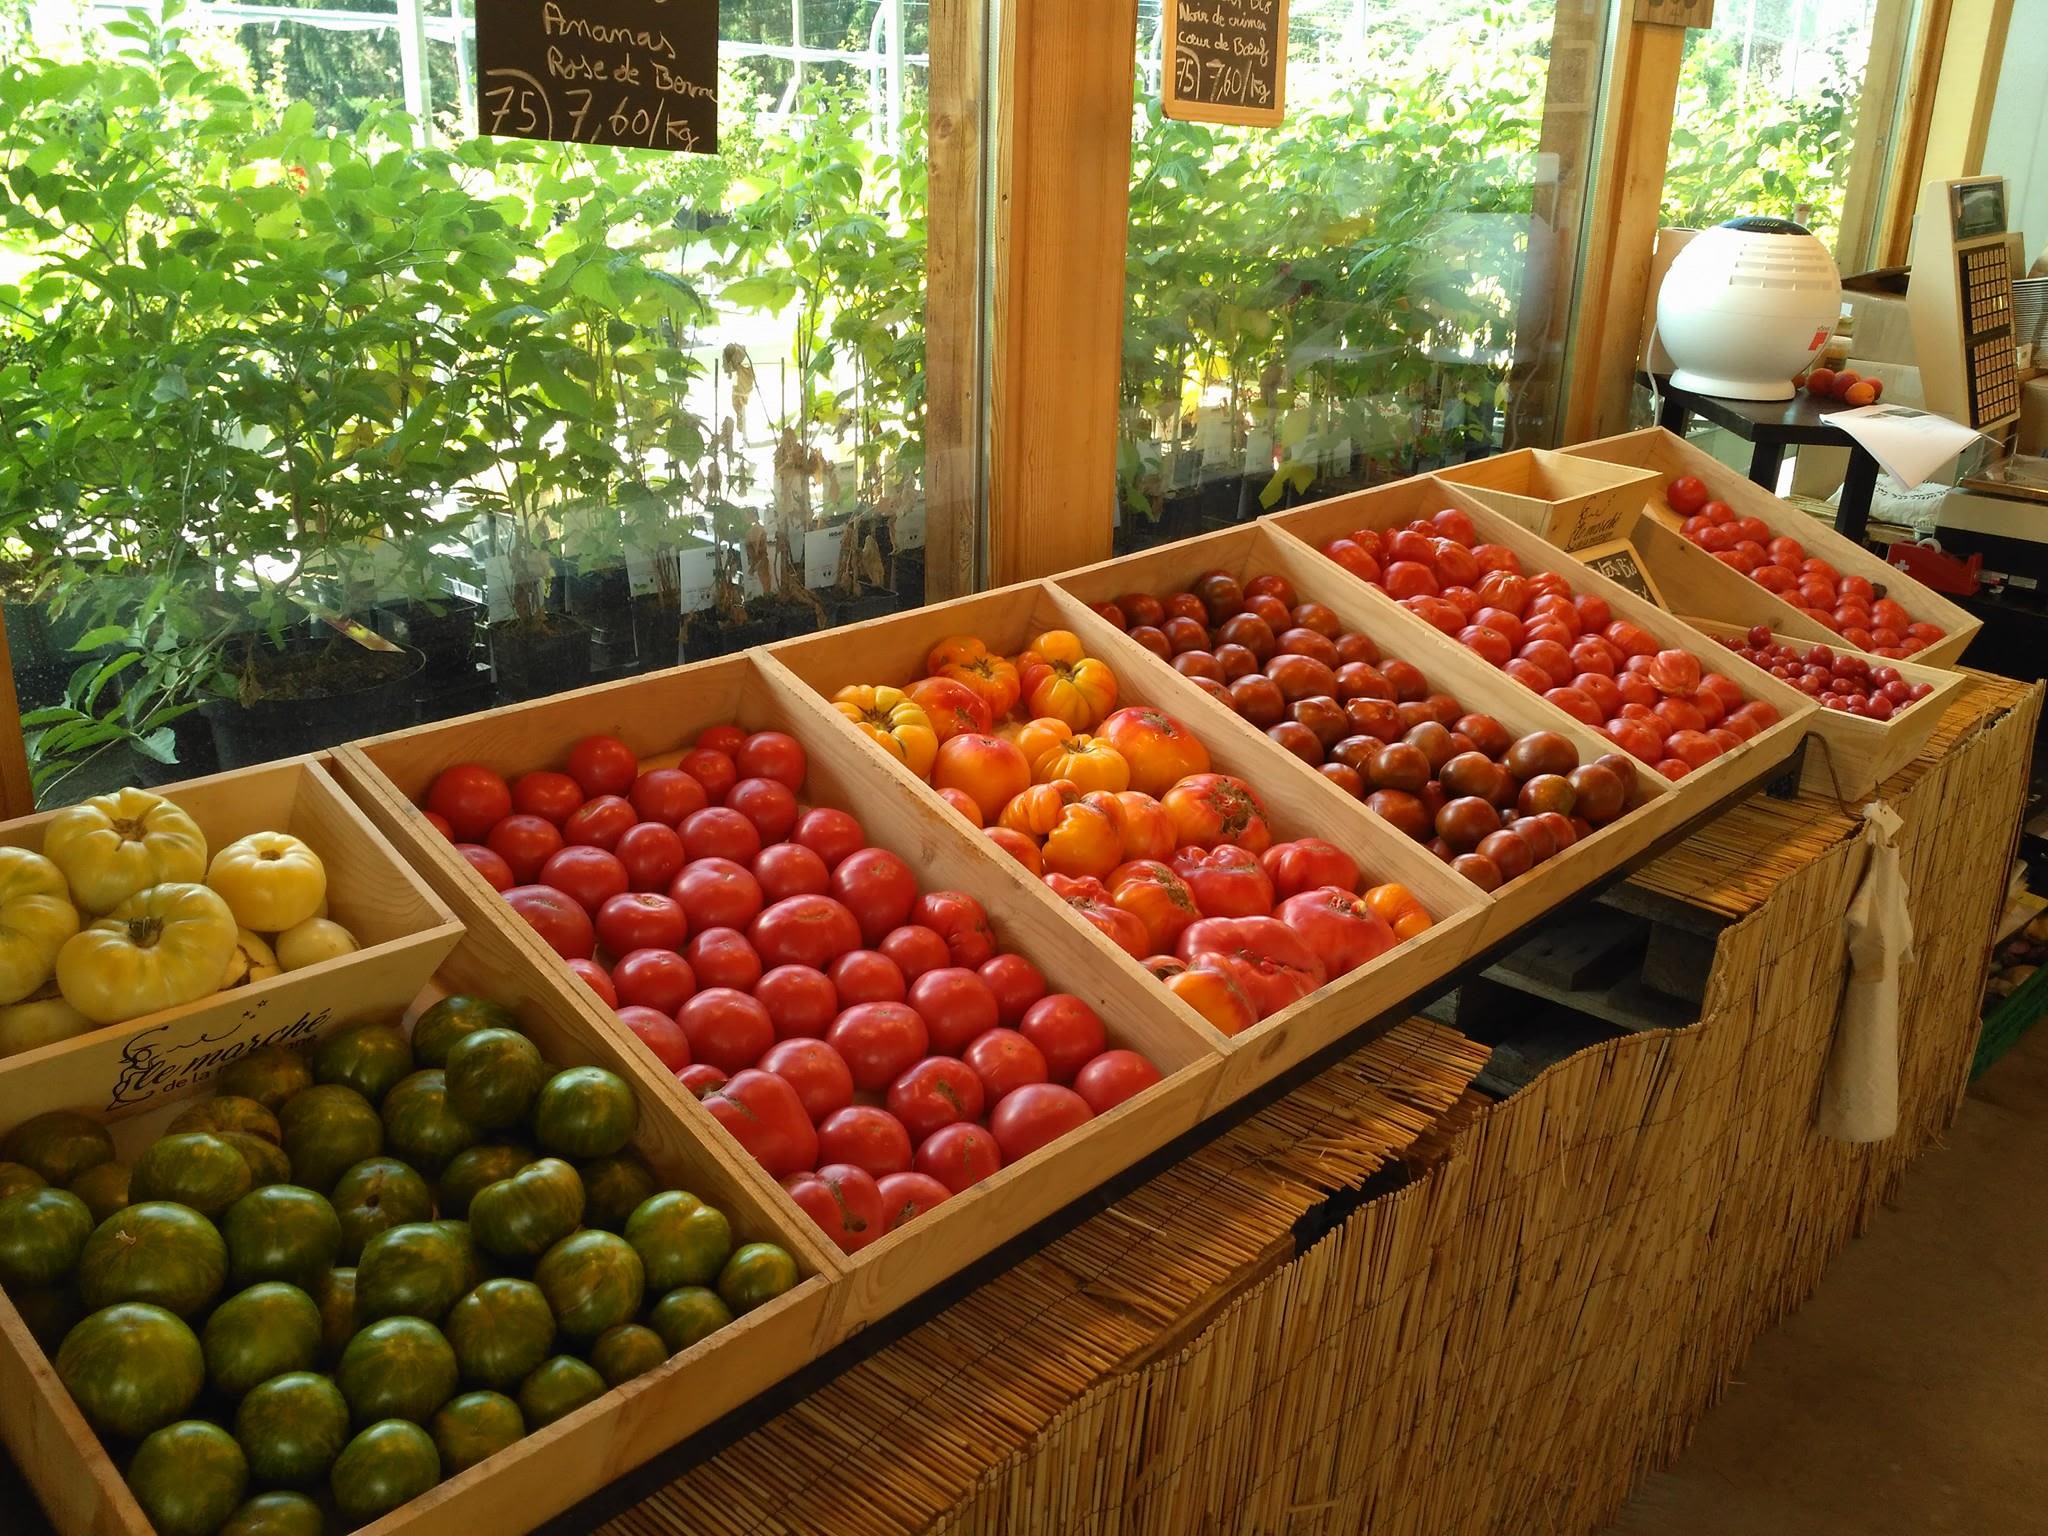 Fruits et légumes bio sont disponibles en vente directe à Saillon. Valais, Suisse